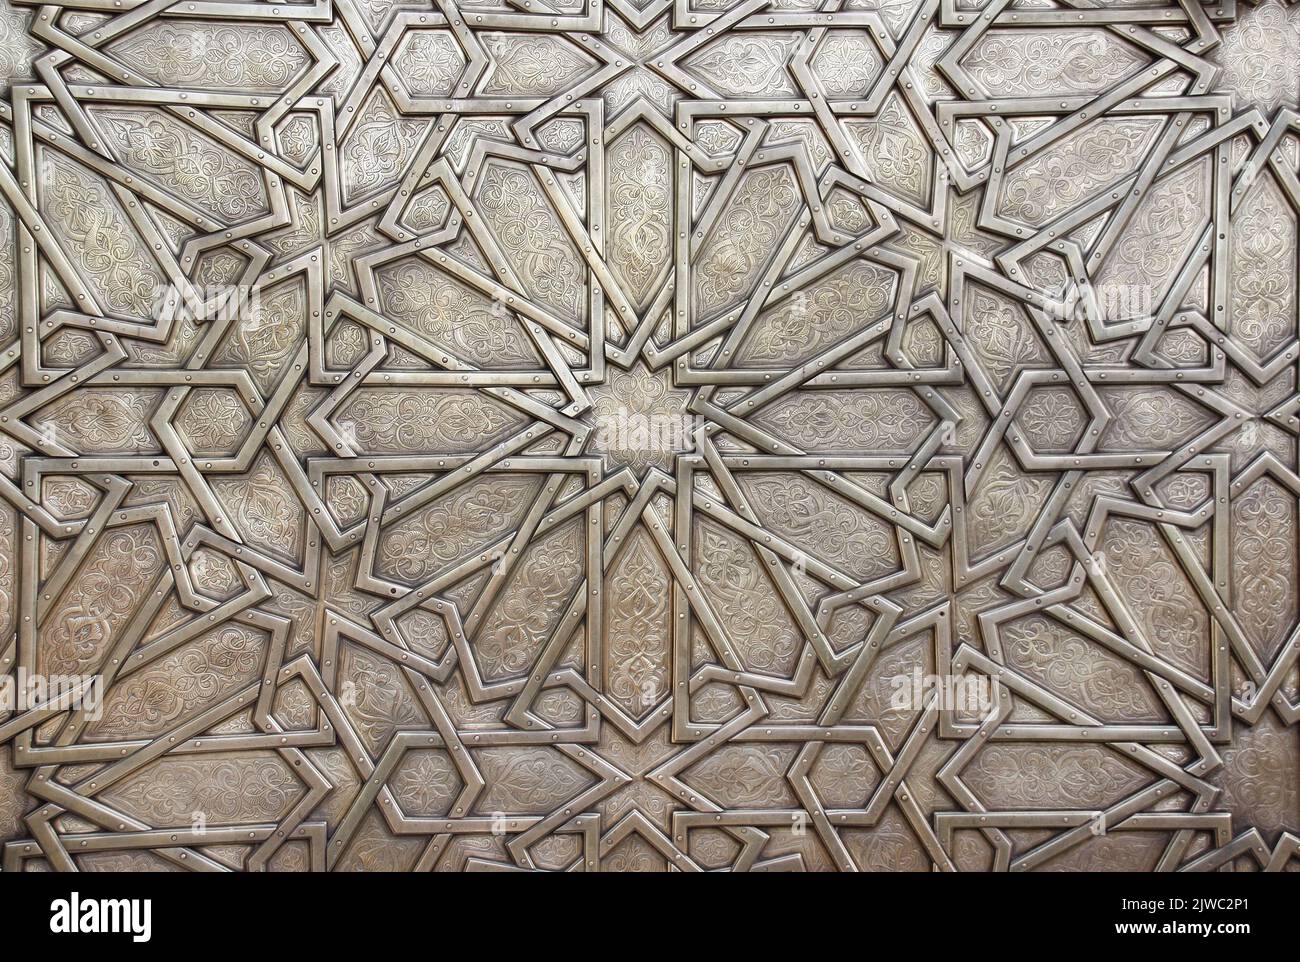 Detalle de puerta de metal con ornamento islámico tradicional. Obturador de cobre para la ventana con motivos florales antiguos y nacionales marroquíes. Ornamentos orientales wi Foto de stock